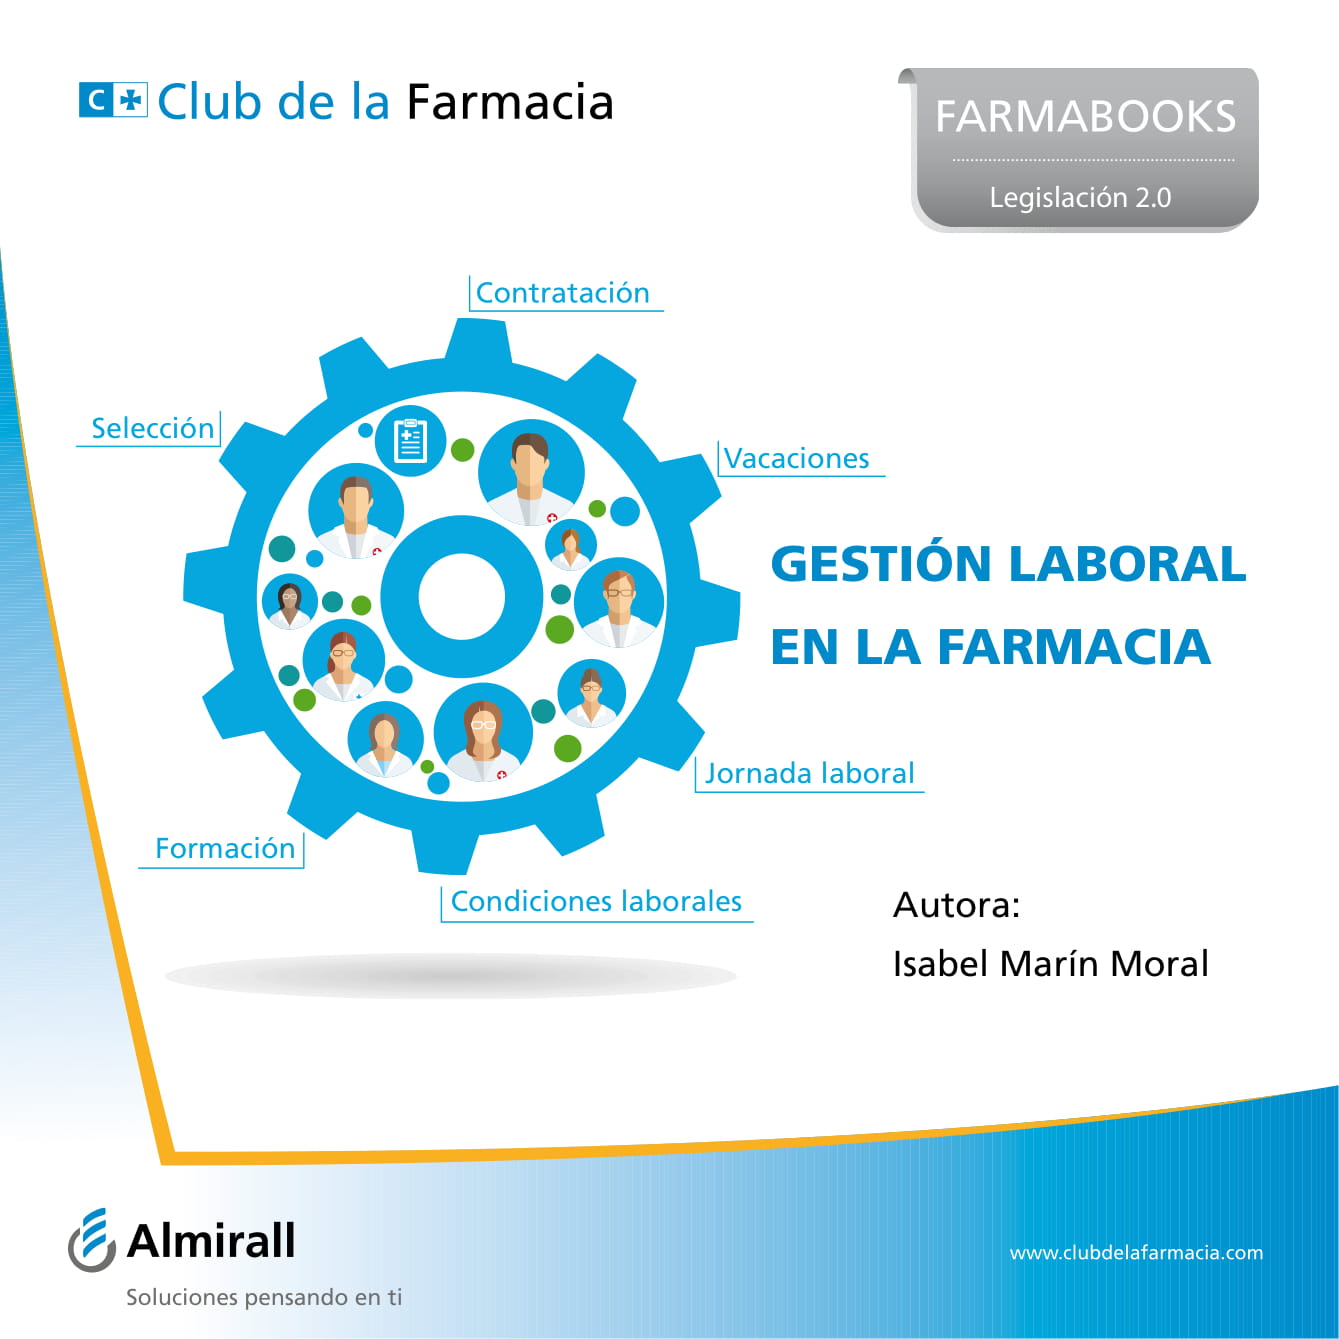 Ebooks-Club de la Farmacia-20.jpg